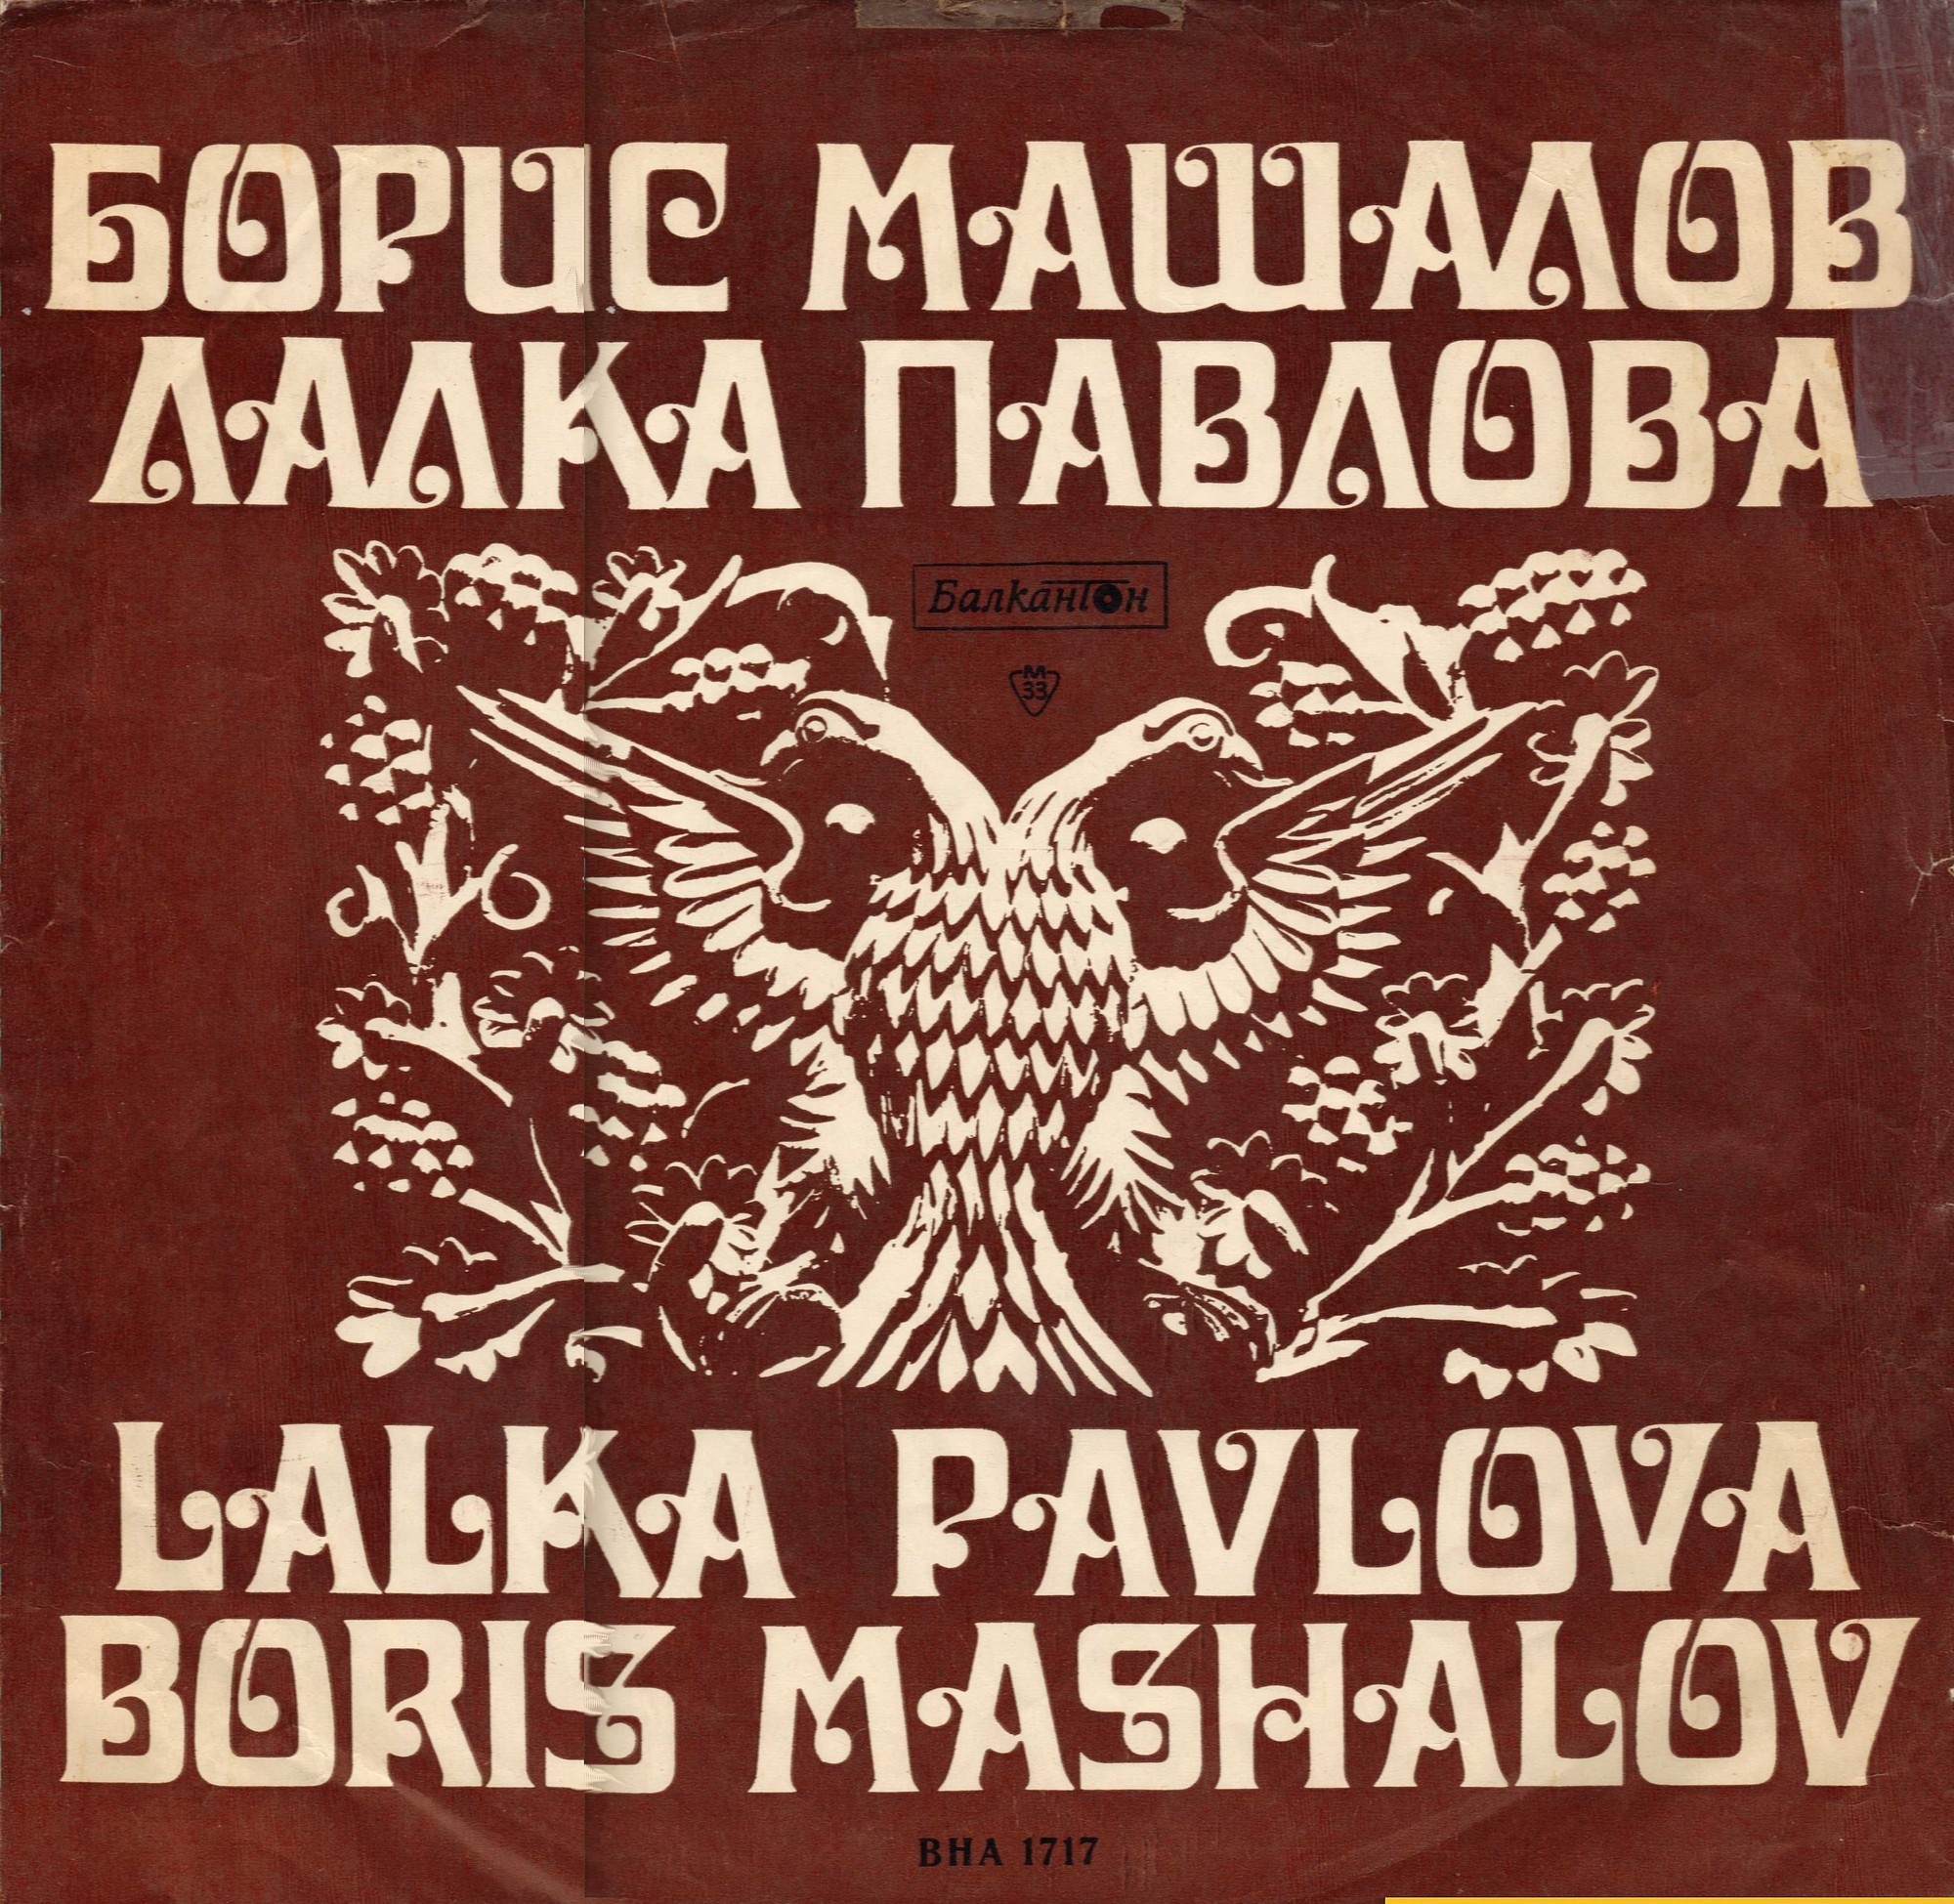 Изпълнения на Борис Машалов и Лалка Павлова